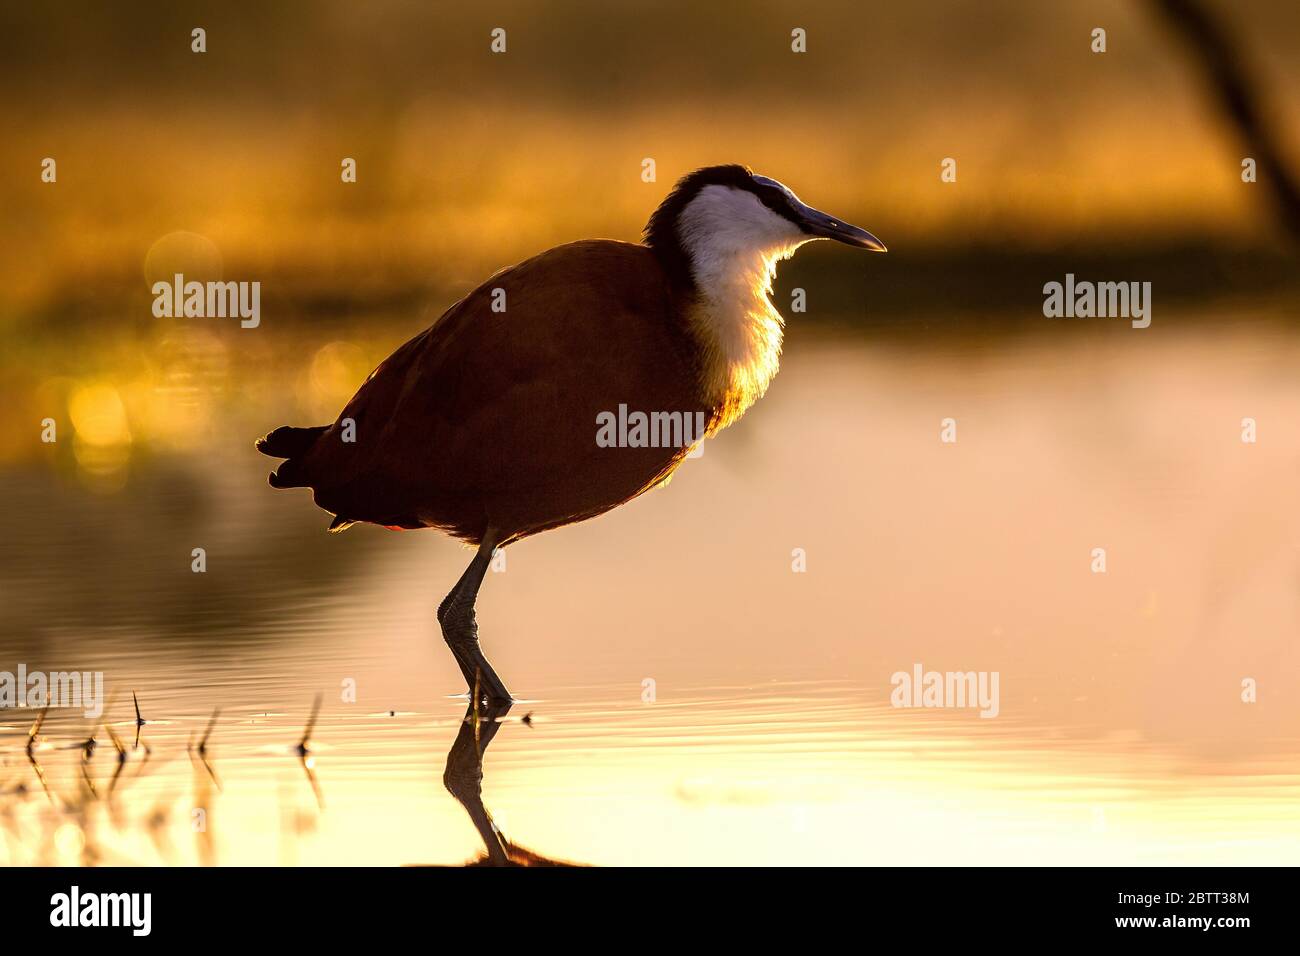 Nahaufnahme eines afrikanischen Jacana-Vogels Actophilornis africanus, der von der Morgensonne hinterleuchtet wird und in einer flachen Lagune steht. Stockfoto